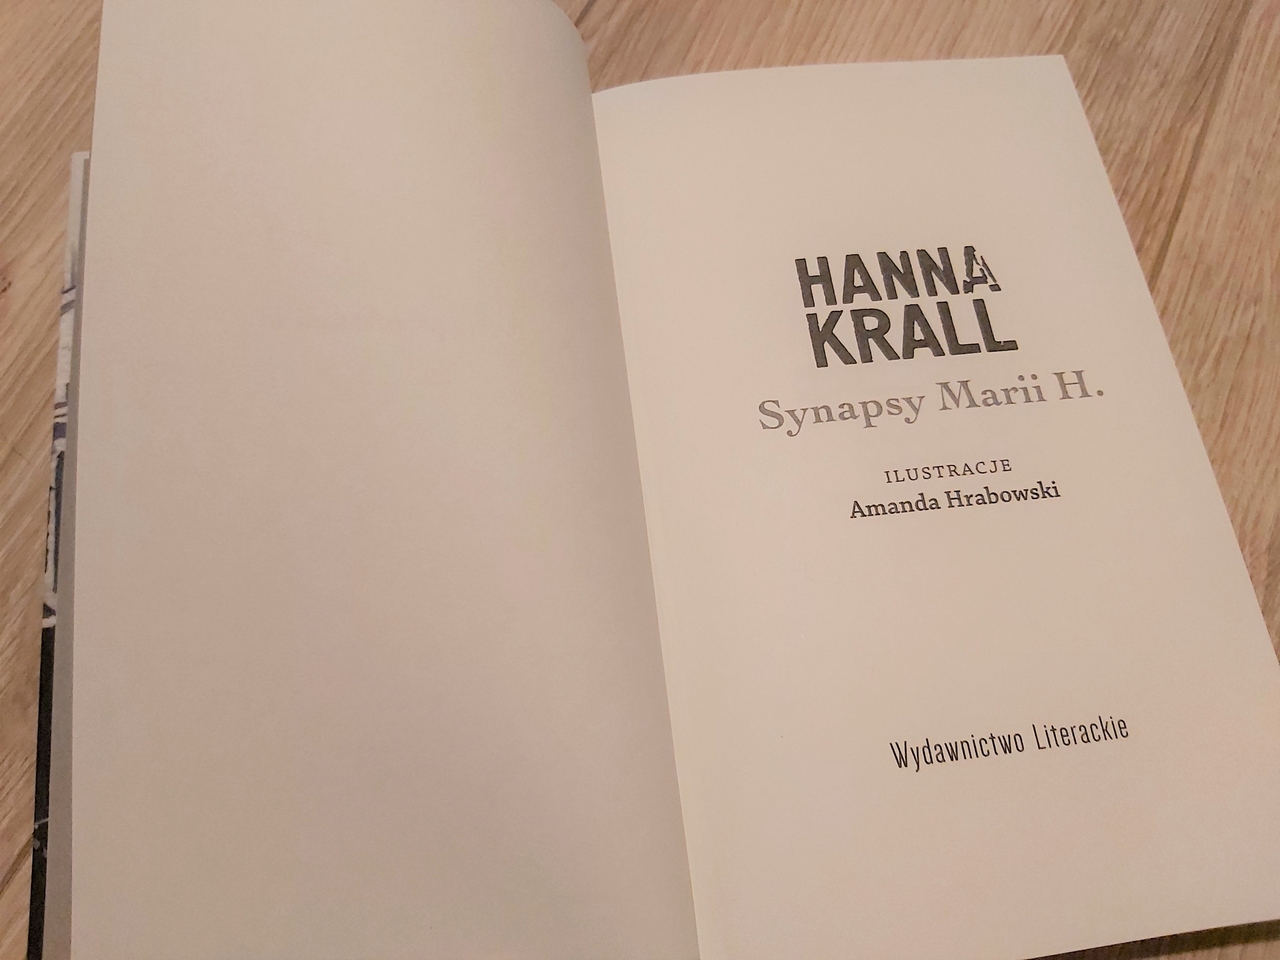 Synapsy Marii H. Hanna Krall - Maria Ratajczak